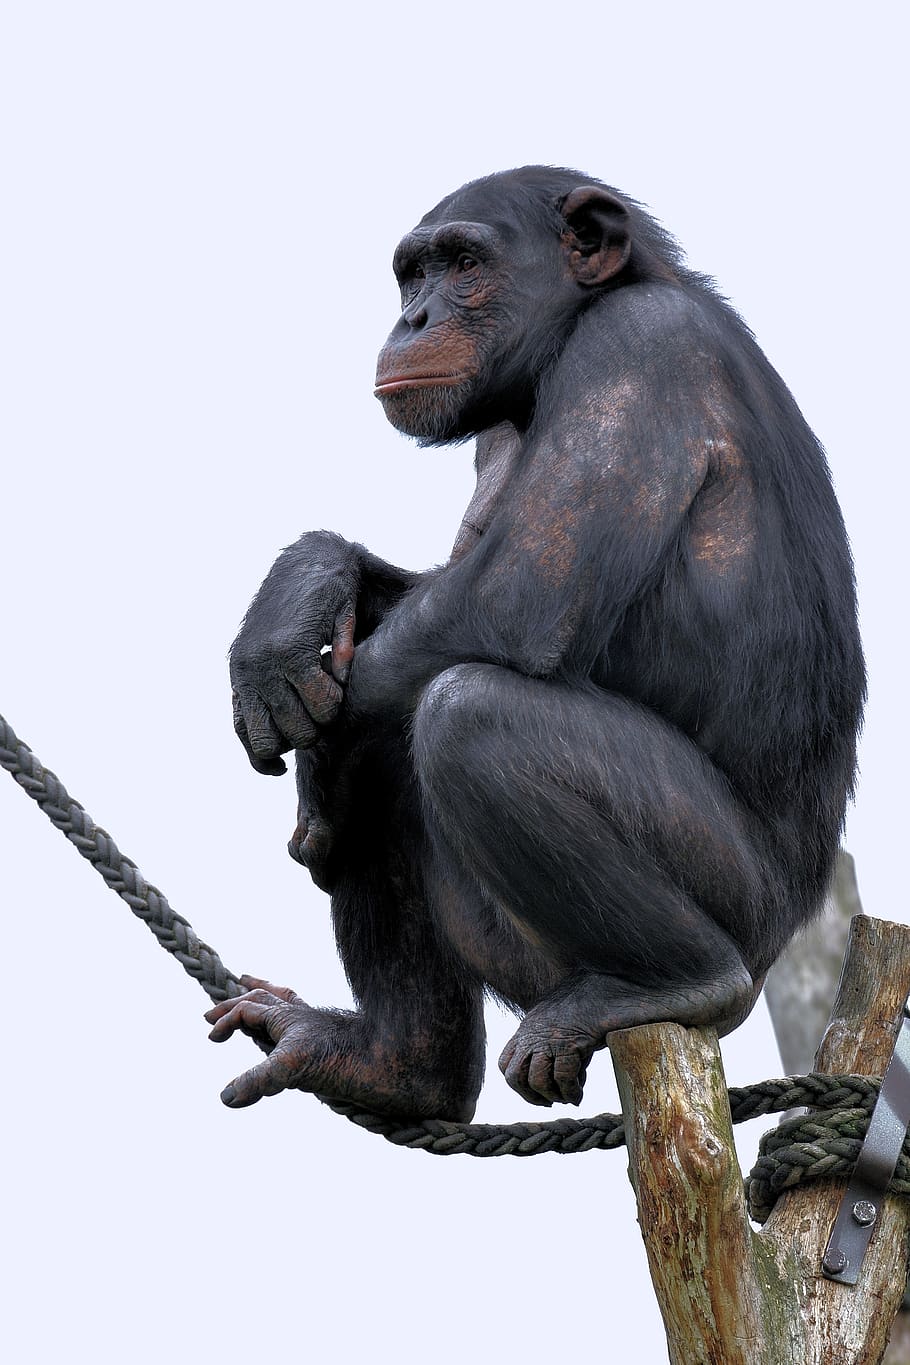 simpanse, monyet, primata, kebun binatang, mengamati, bijaksana, hewan margasatwa, hewan di alam liar, vertebrata, kera